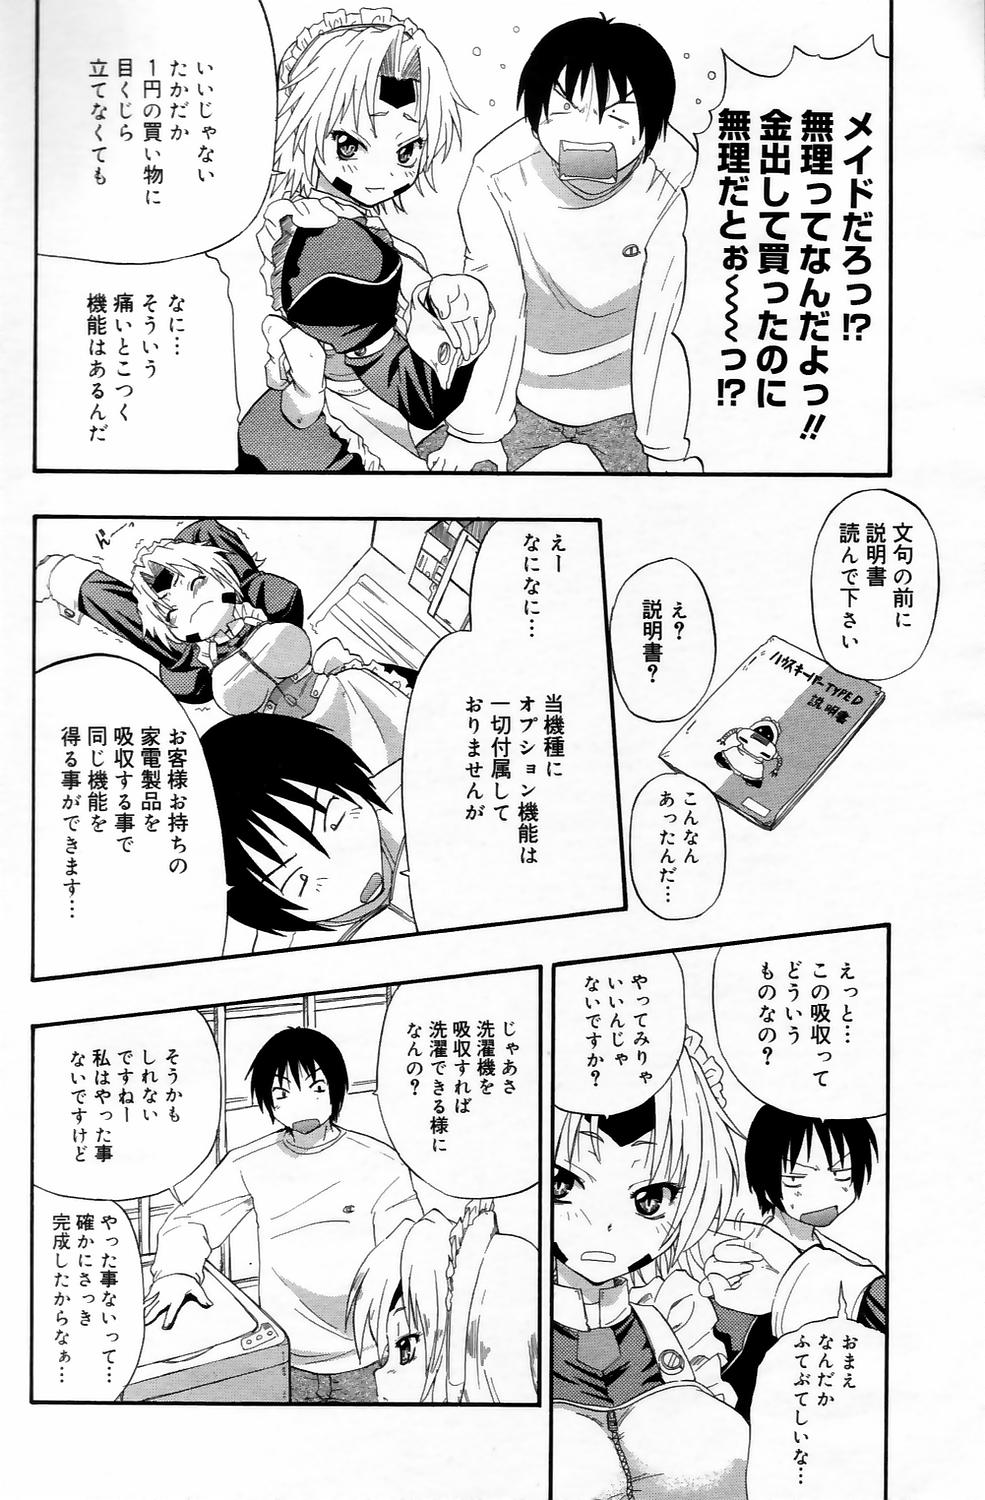 漫画ばんがいち 2006年5月号 VOL.192